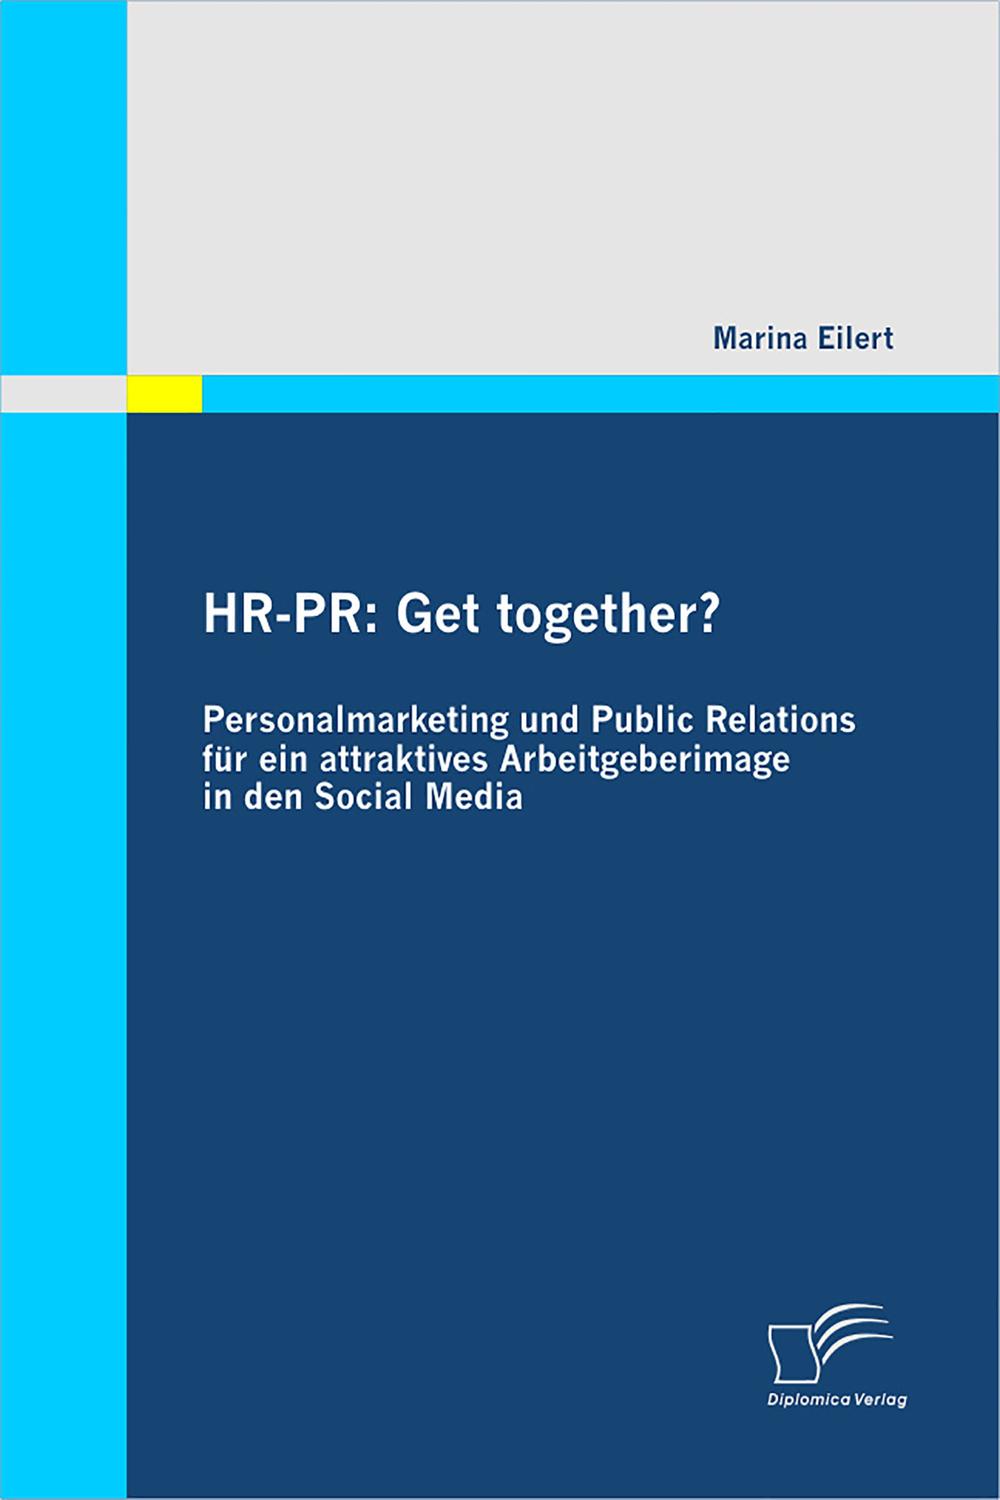 HR-PR: Get together? Personalmarketing und Public Relations für ein attraktives Arbeitgeberimage in den Social Media - Marina Eilert